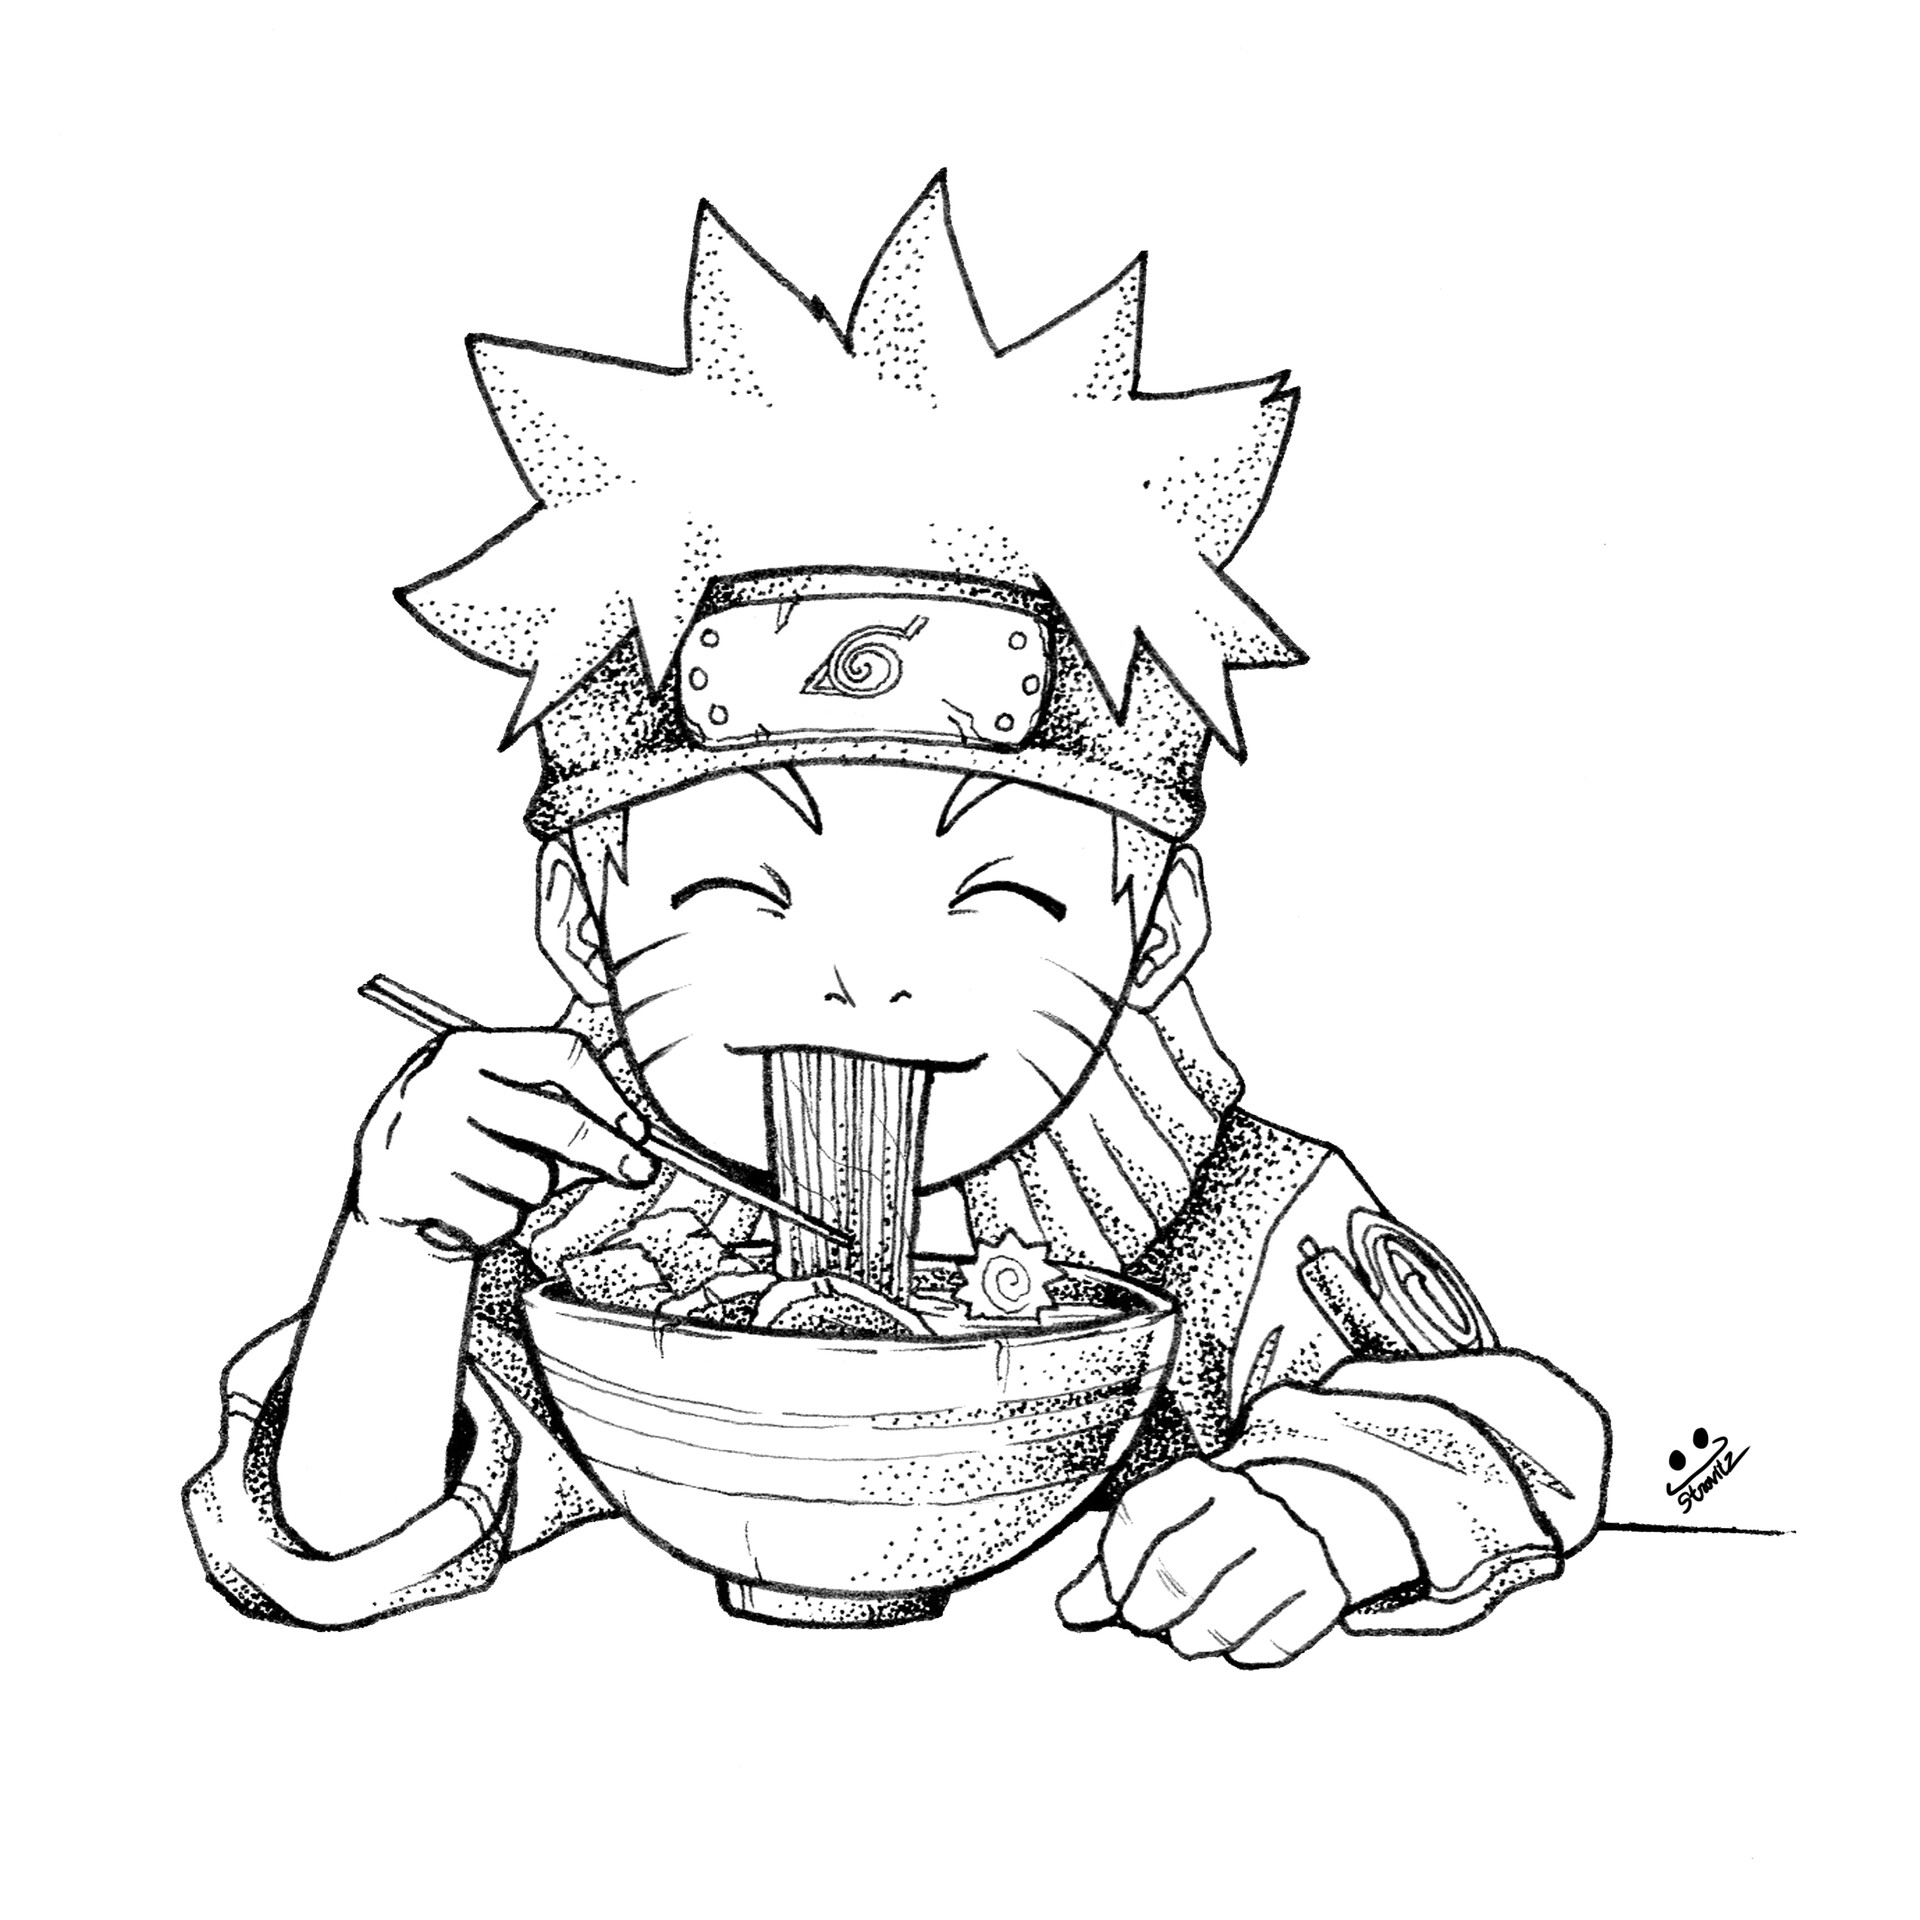 Naruto eat ramen. | Naruto Amino